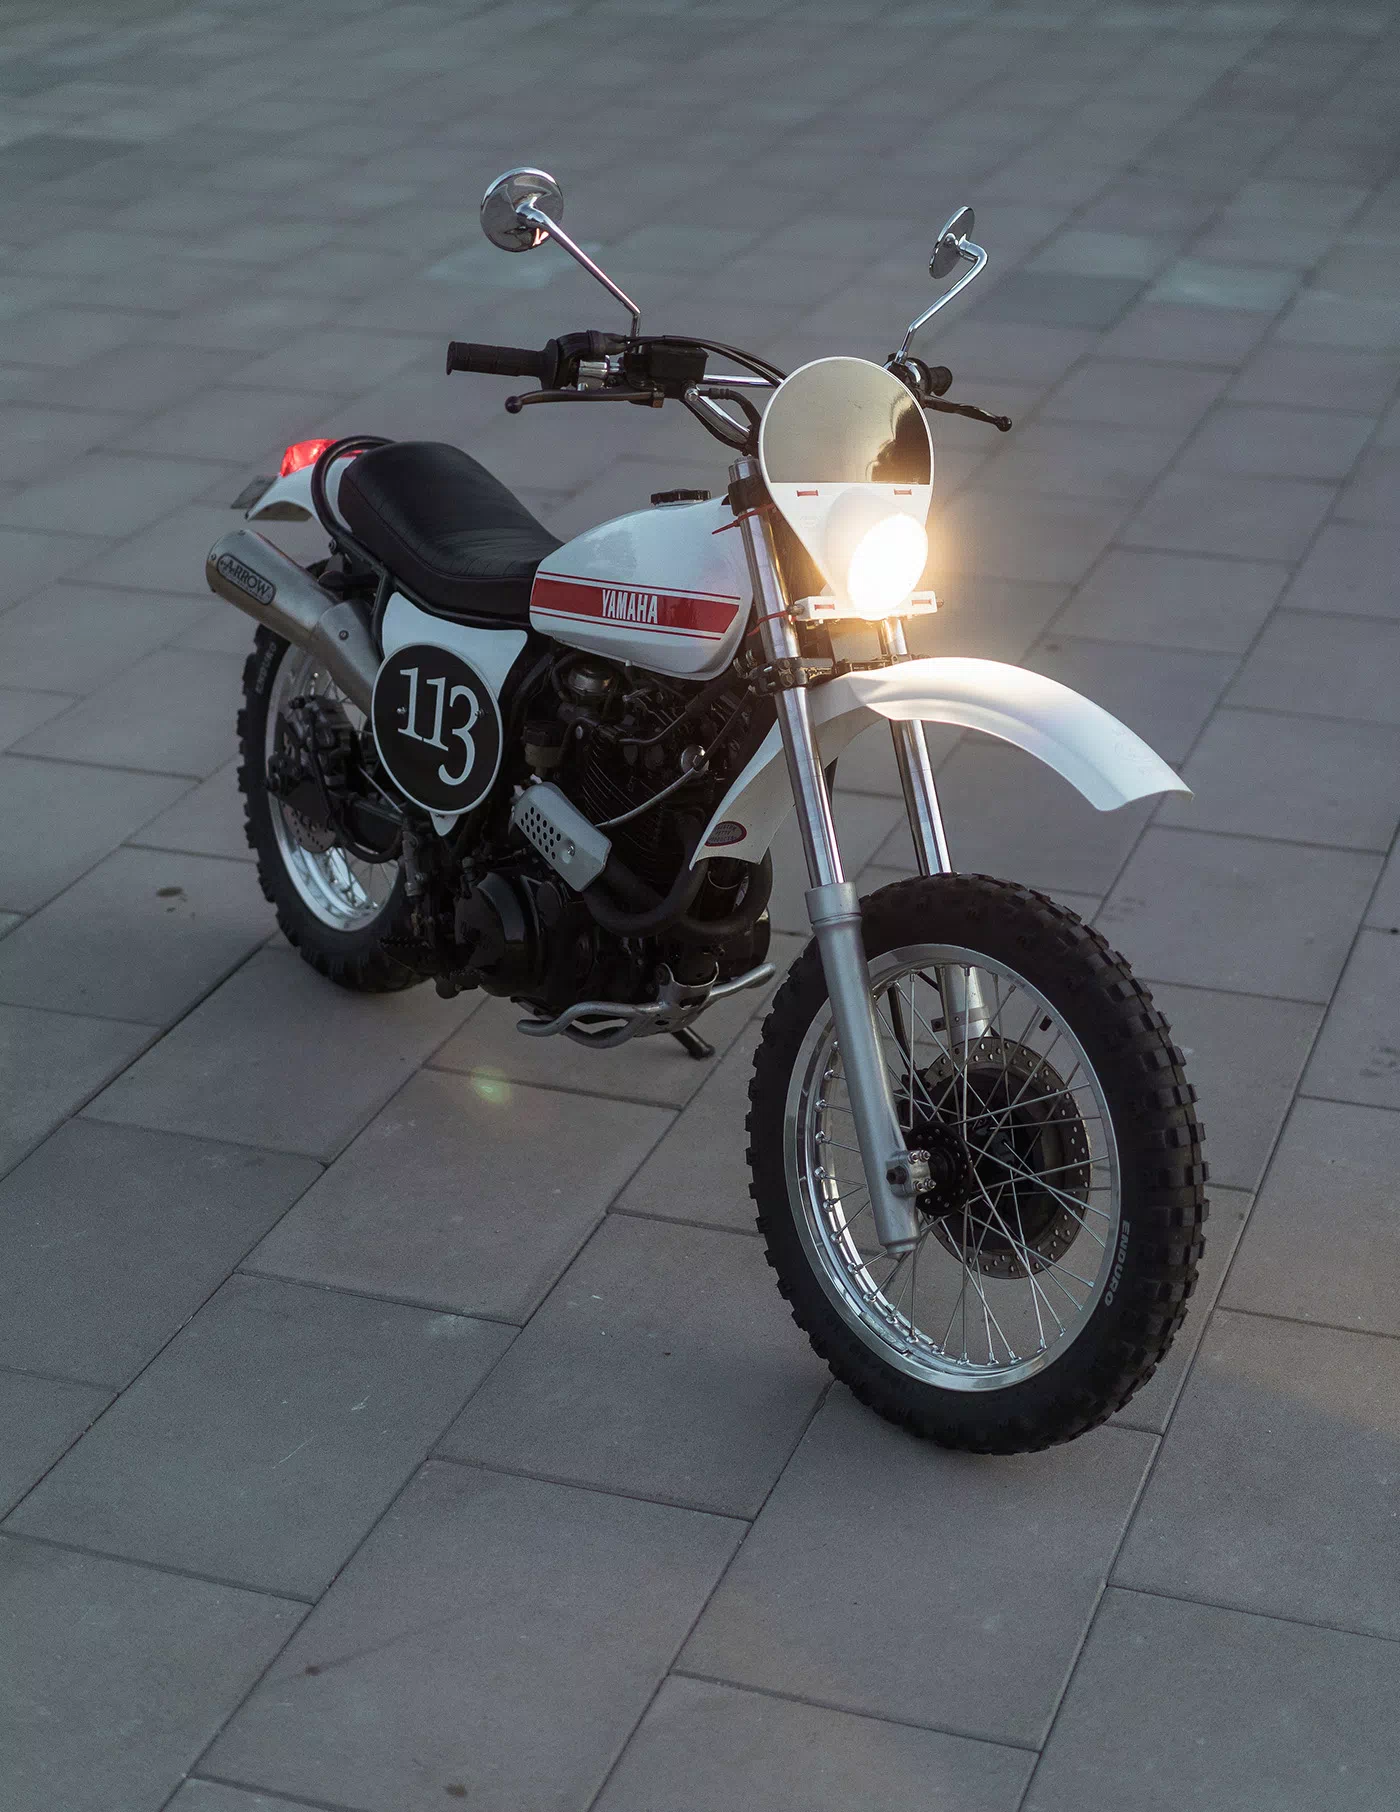 Unik-Motorcycles-Yamaha-XT-600-113-012